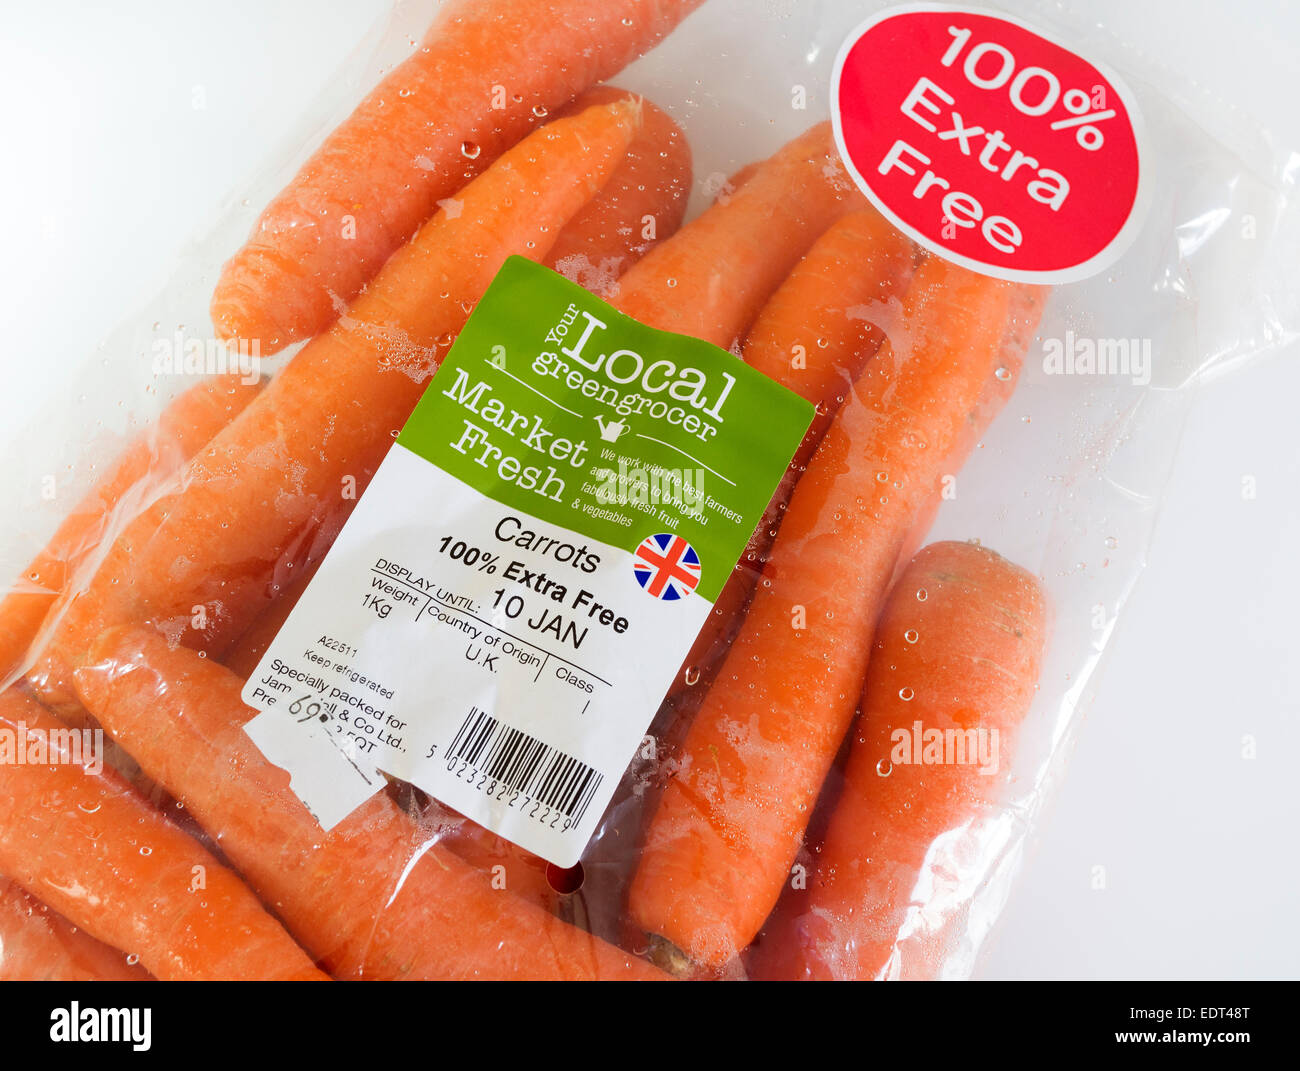 Exemple de l'utilisation inutile et dommageable pour l'environnement d'un sac plastique pour vendre les carottes par une grande chaîne de supermarchés. Banque D'Images